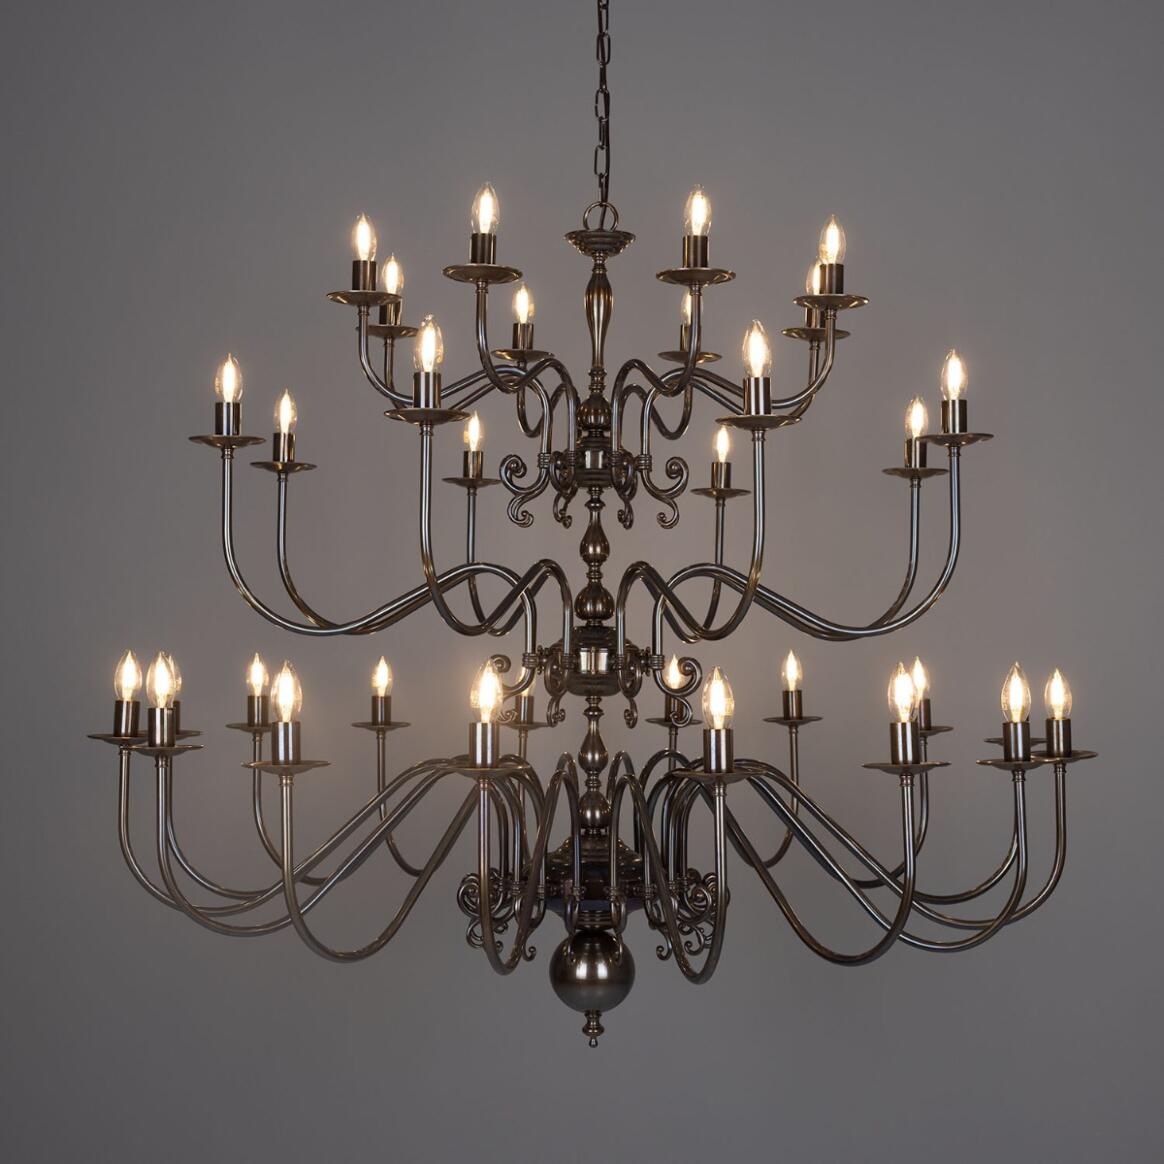 Lustre style chandelier Flemish en laiton à trois étages, 32 Lumières main product image